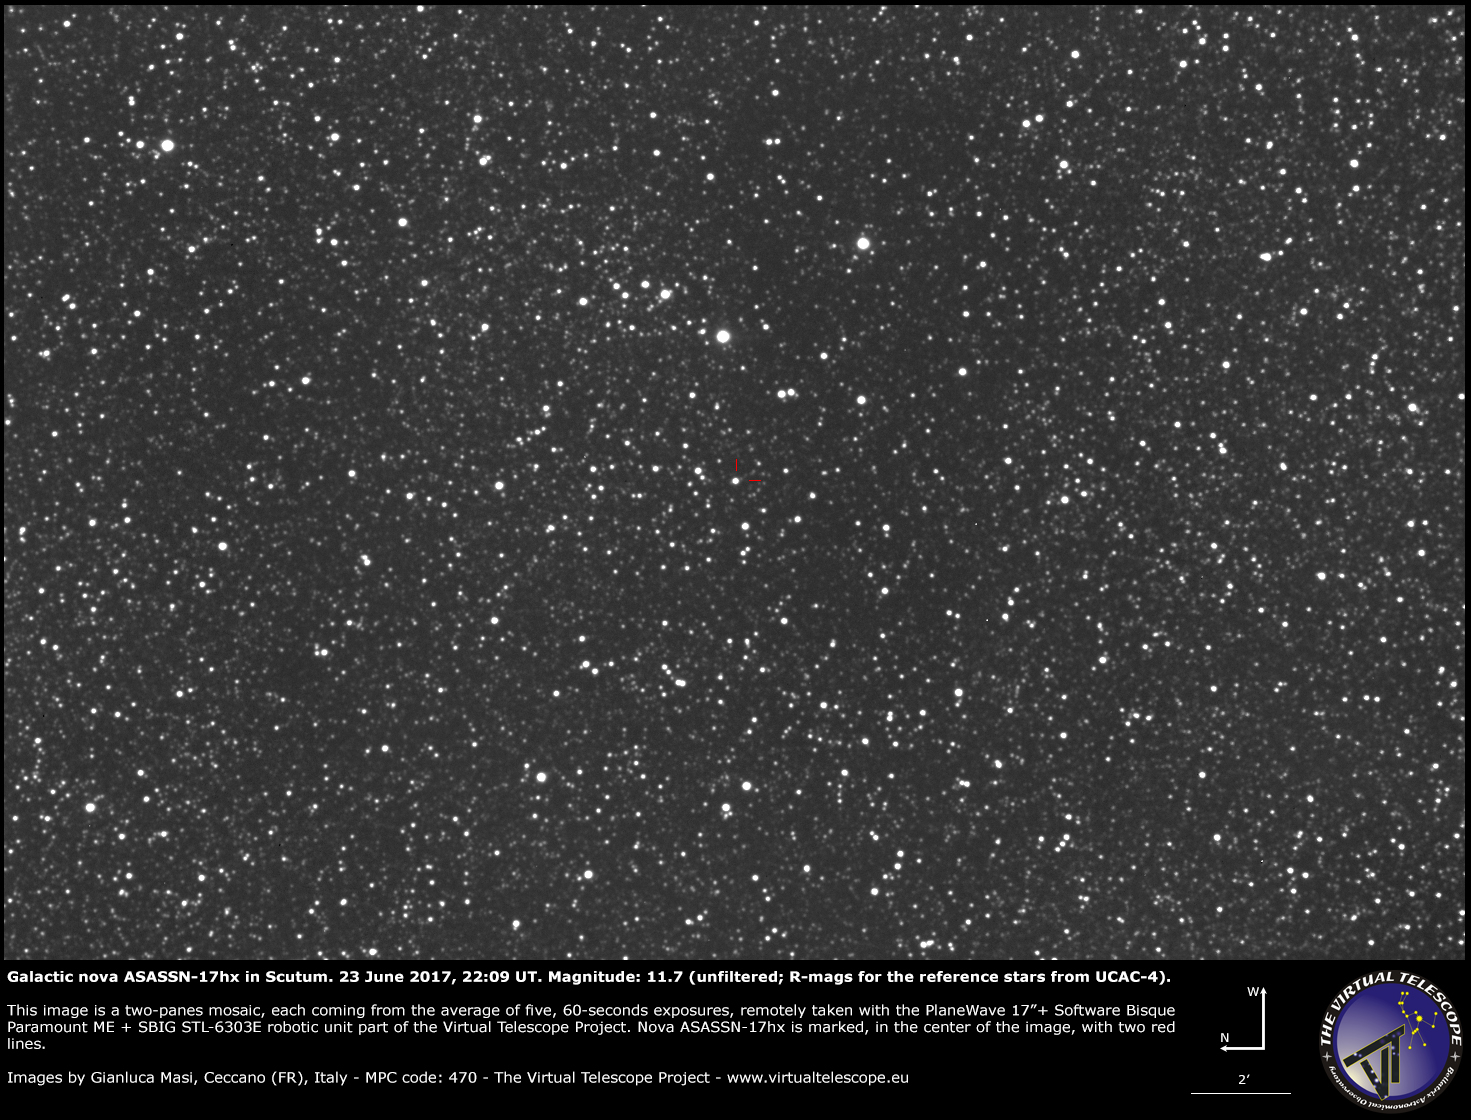 Scopri di più sull'articolo ASASSN-17hx, una nuova nova galattica nello Scudo: un’immagine (23 giugno 2017)